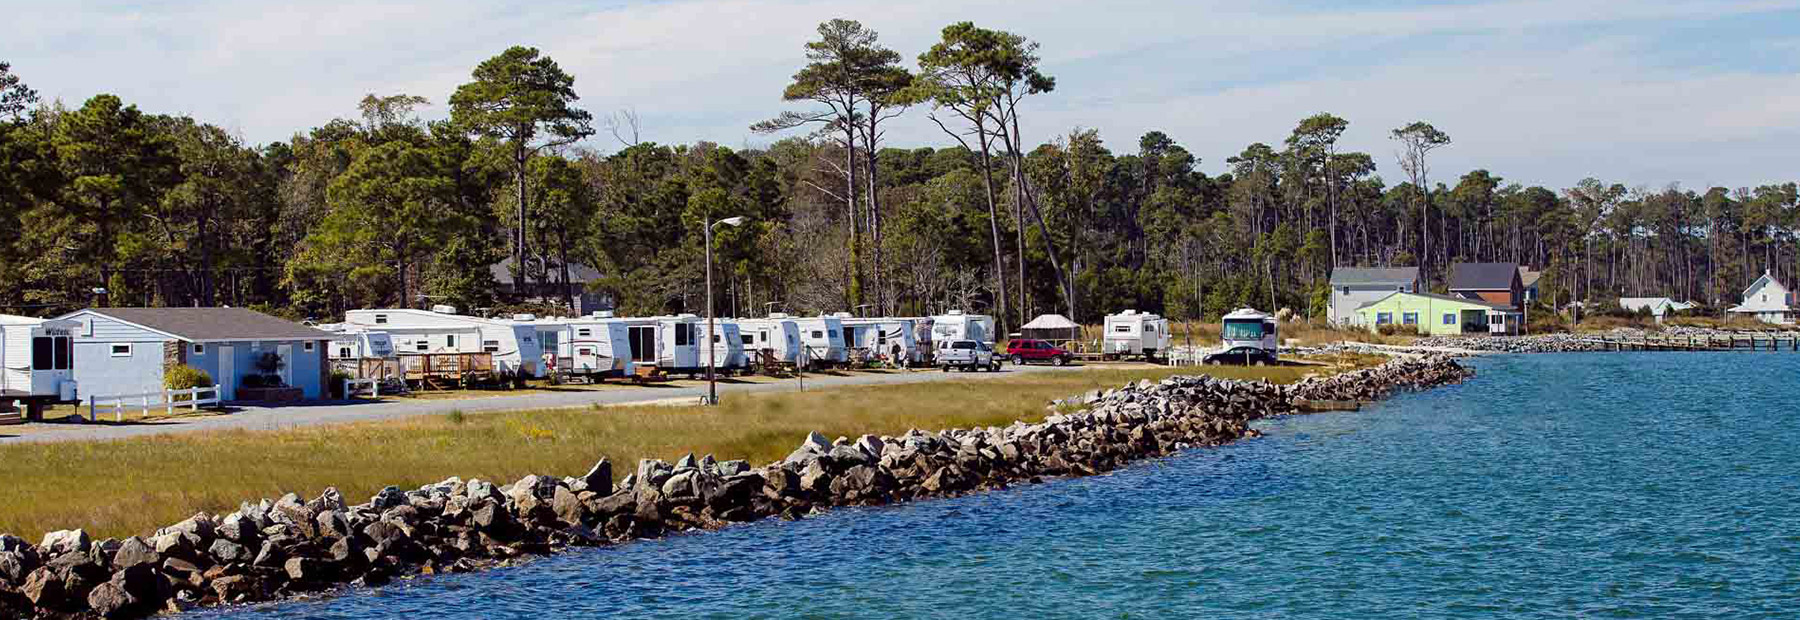 Gwynn's Island RV Resort